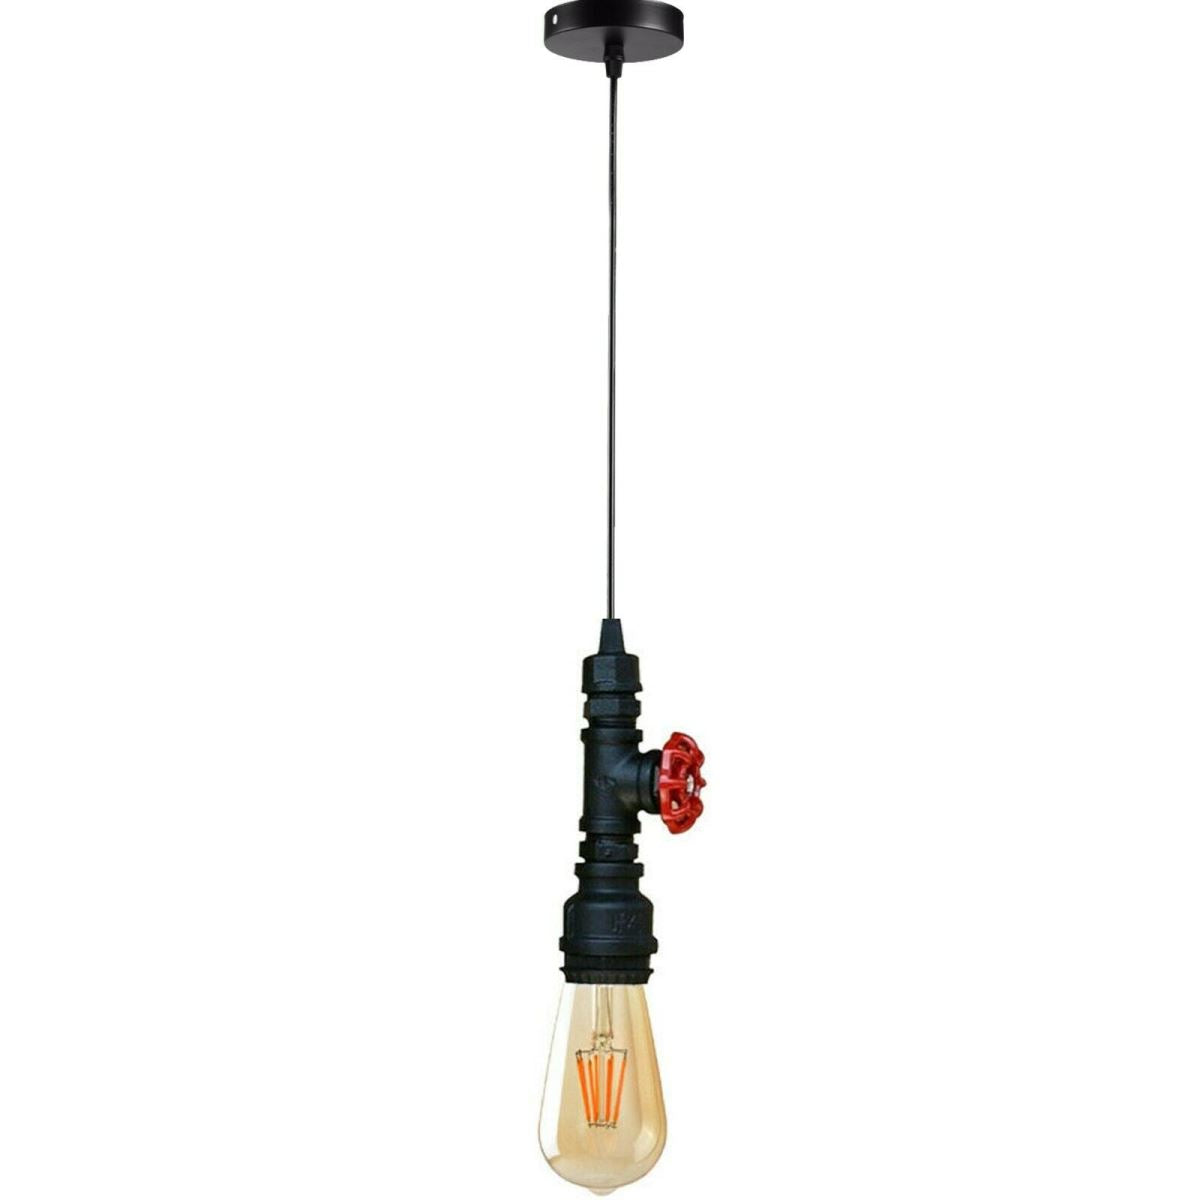 Chandelier Ceiling Light Water Pipe E27 Loft Pendant Light with FREE Bulb~2575 - LEDSone UK Ltd